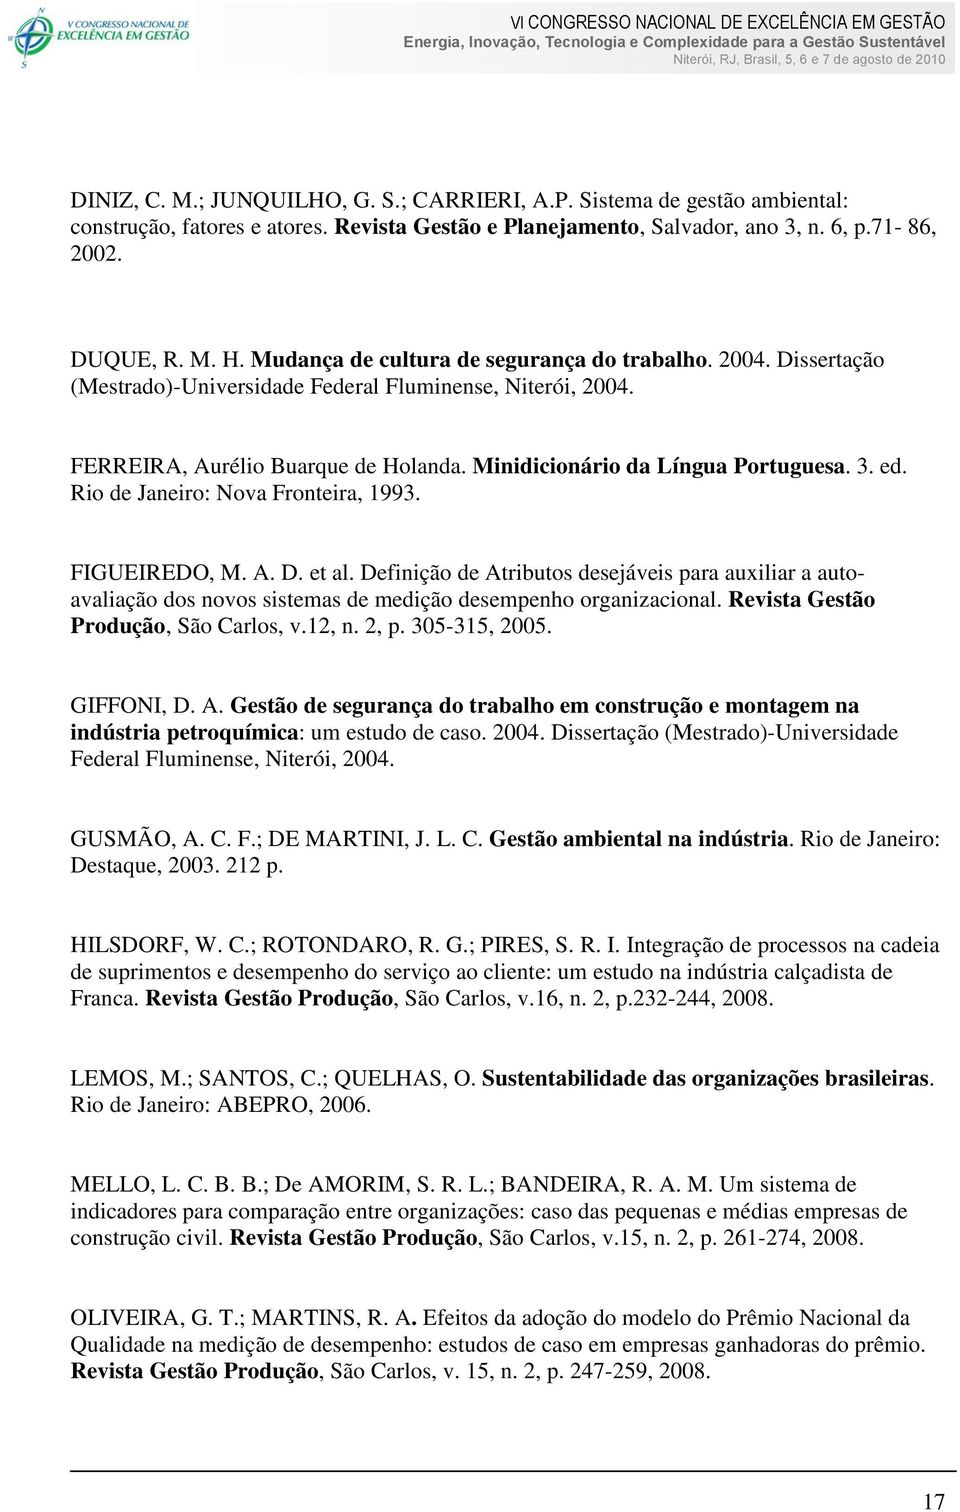 ed. Rio de Janeiro: Nova Fronteira, 1993. FIGUEIREDO, M. A. D. et al. Definição de Atributos desejáveis para auxiliar a autoavaliação dos novos sistemas de medição desempenho organizacional.